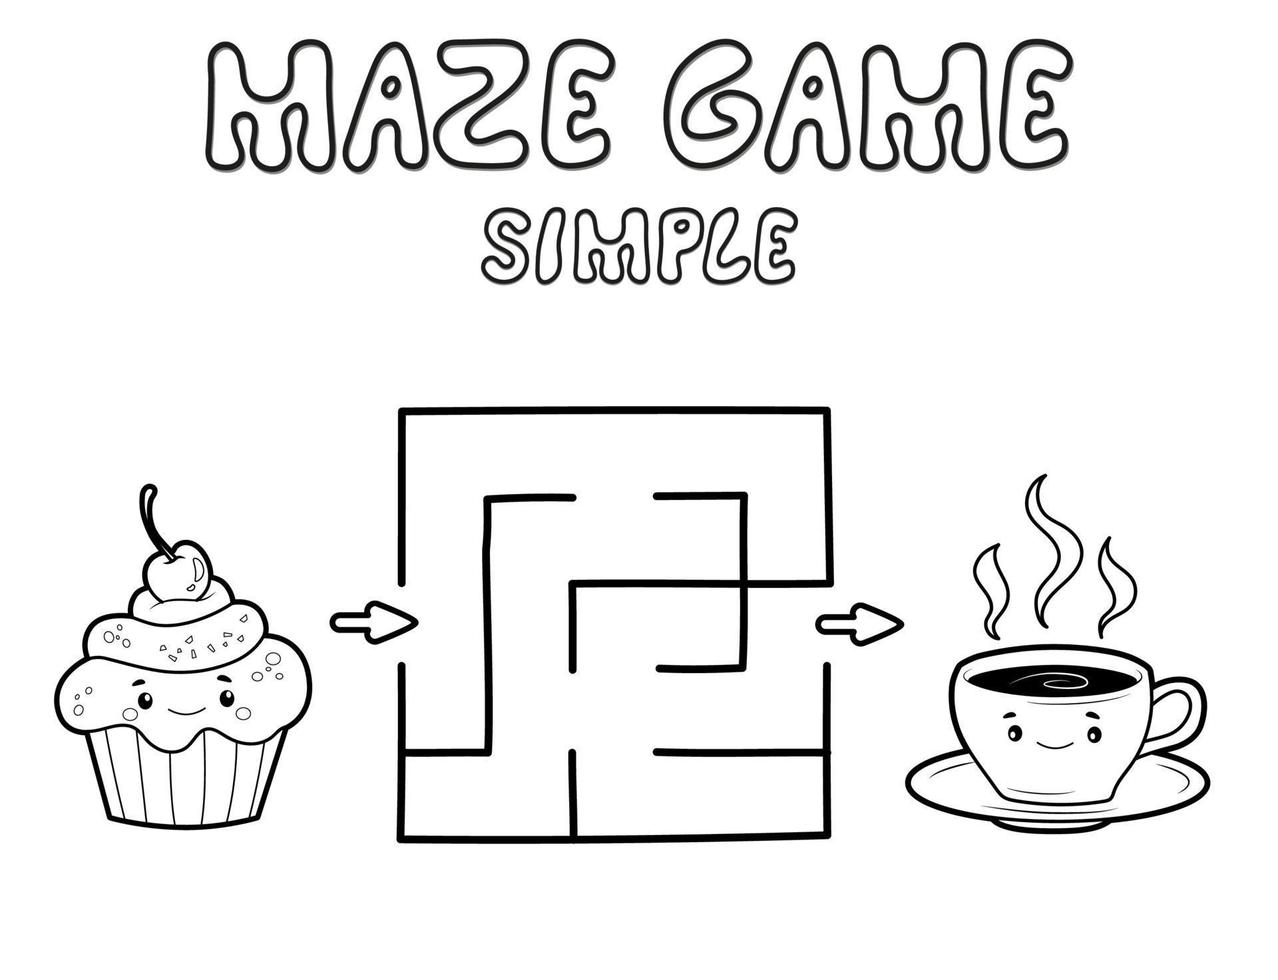 einfaches Labyrinth-Puzzle-Spiel für Kinder. Skizzieren Sie ein einfaches Labyrinth- oder Labyrinthspiel mit Kuchen und Tee. vektor